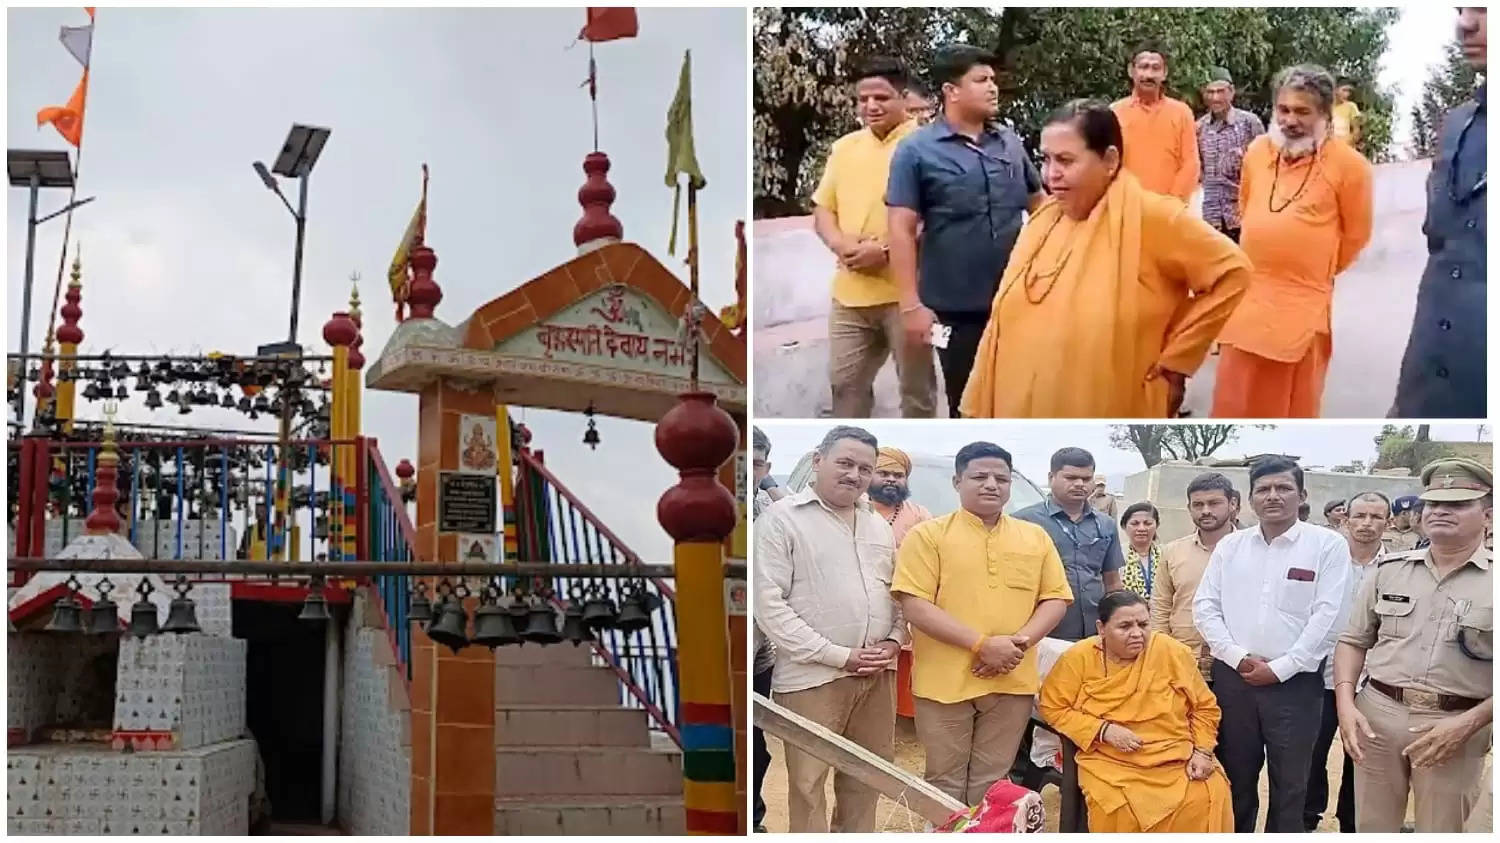 नैनीताल - देवगुरु बृहस्पति धाम पहुचीं पूर्व केंद्रीय मंत्री उमा भारती, जानिए ओखलकांडा में स्थित यह मंदिर क्यों है विश्व प्रसिद्ध